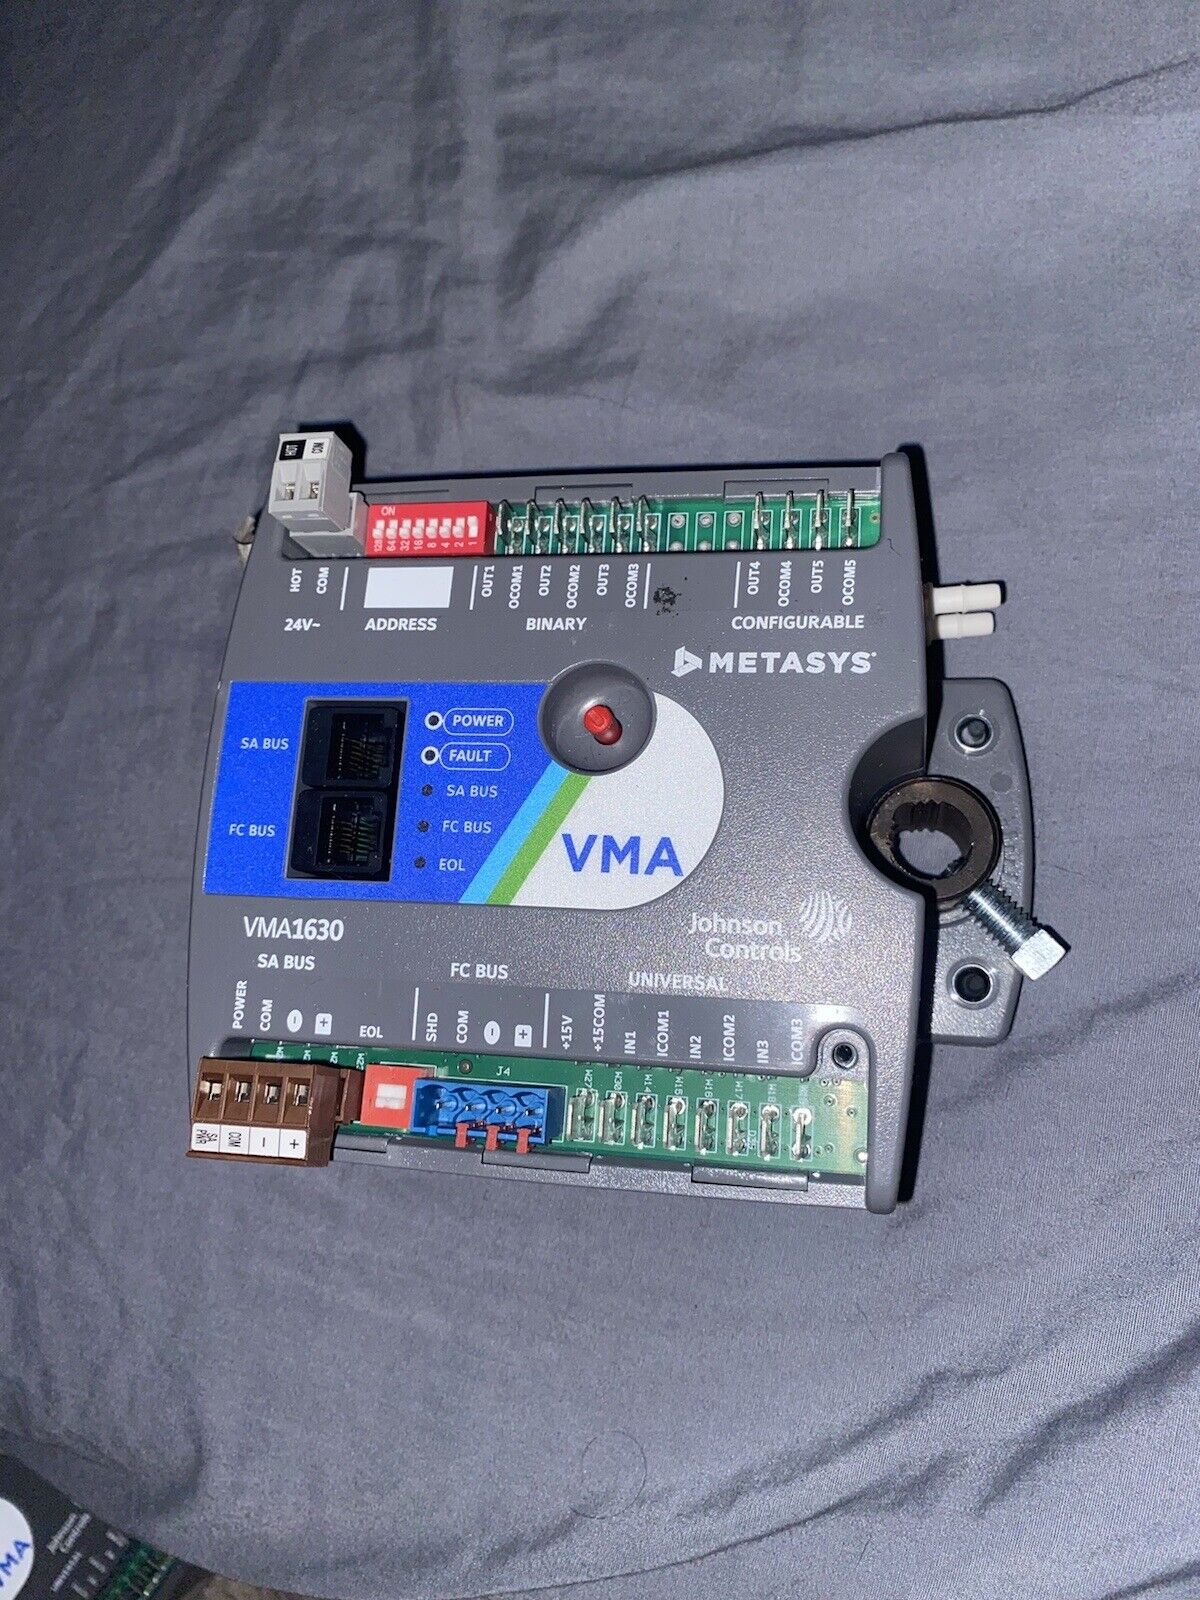 Johnson Controls MS-VMA1630-1 VMA ProgrammableVAV Box Controller